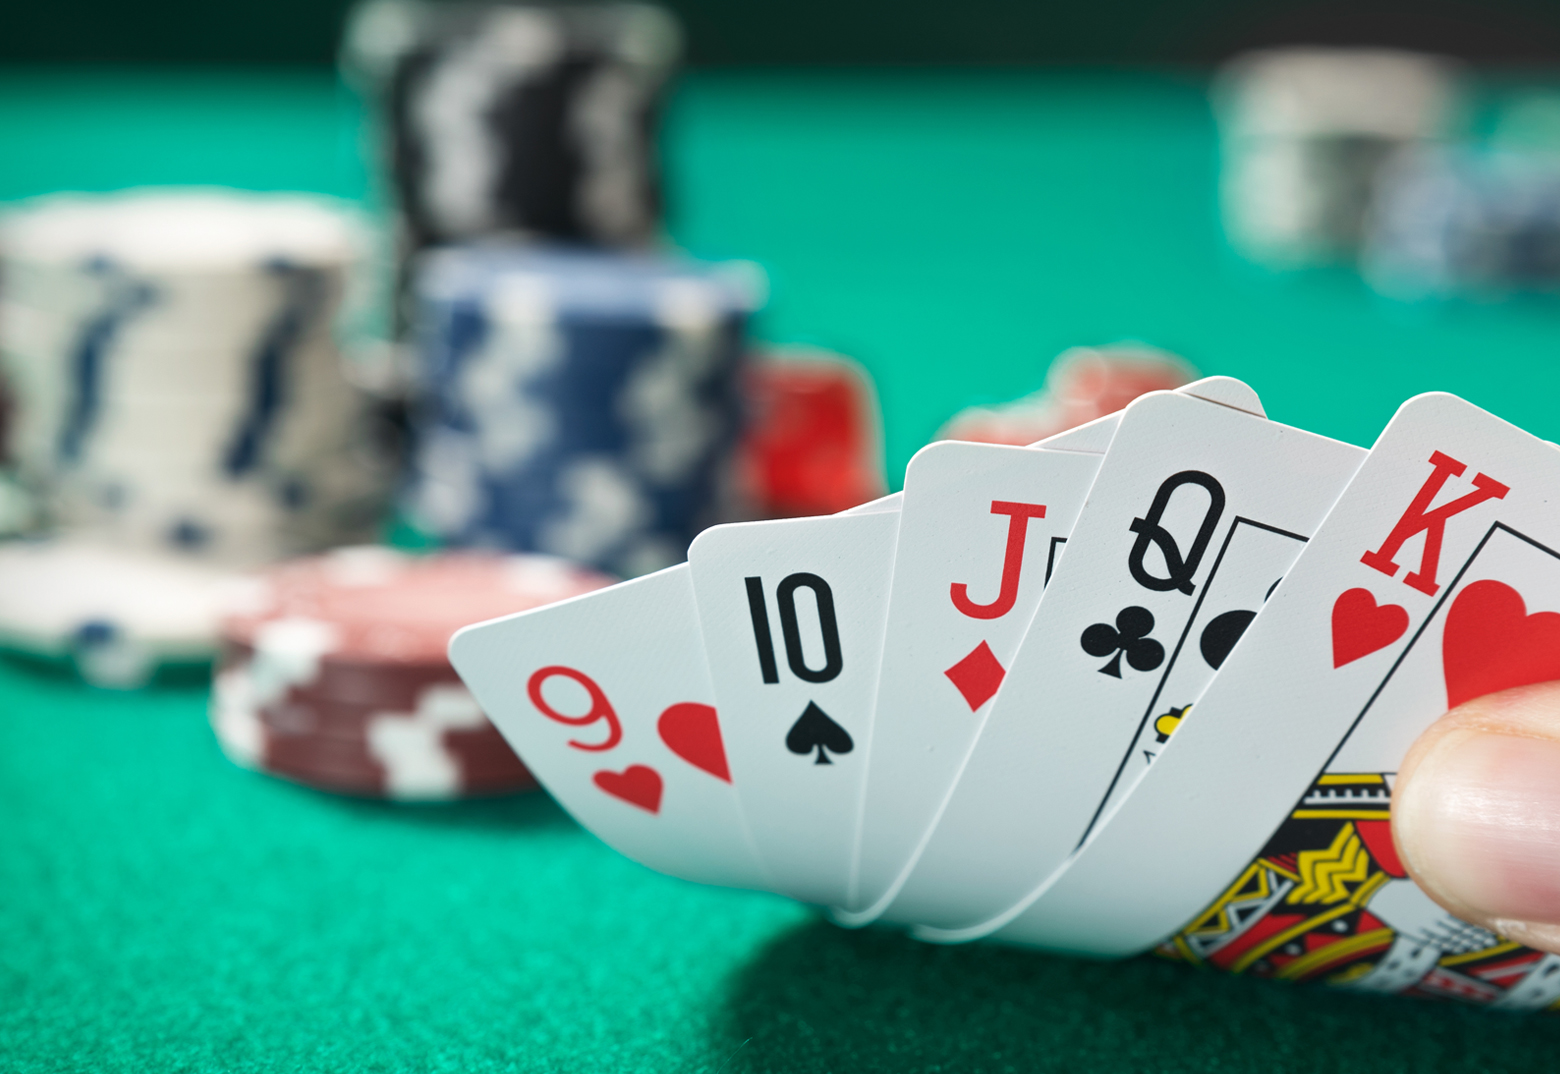 Aufgedeckte Pokerkarten sind in einer Hand zu sehen. Im Hintergrund stehen Poker Chips und der Pokertisch.